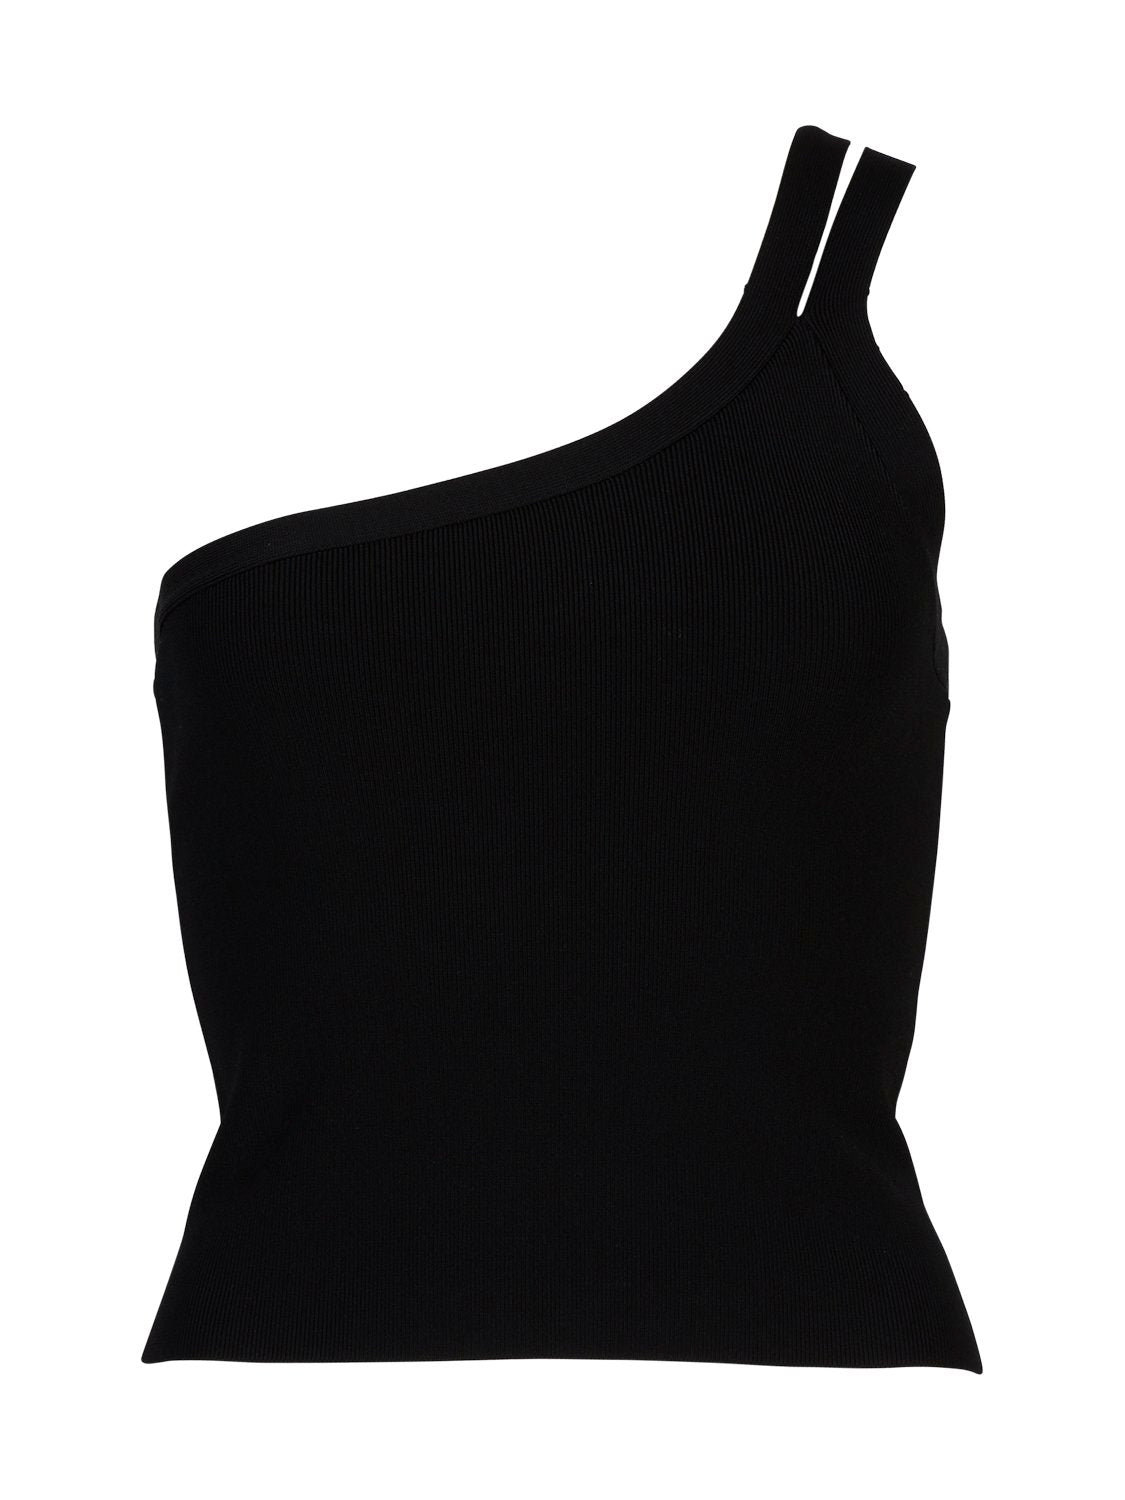 Evie Luxe Asymmetric Knit Tank - Black